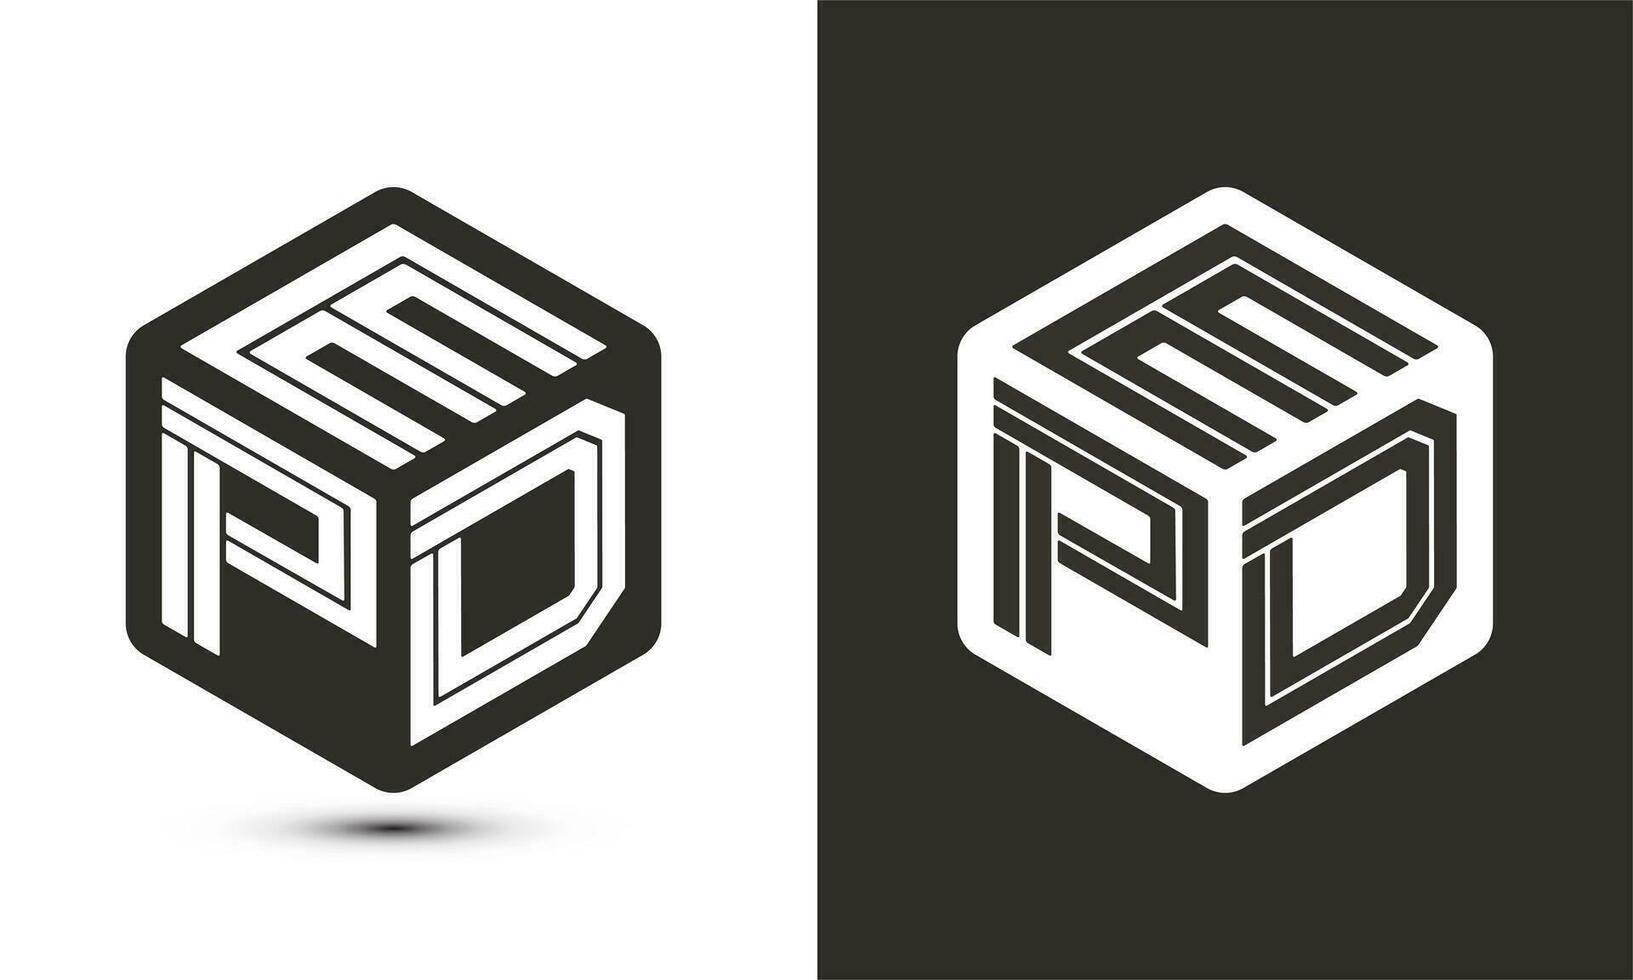 epd brief logo ontwerp met illustrator kubus logo, vector logo modern alfabet doopvont overlappen stijl.